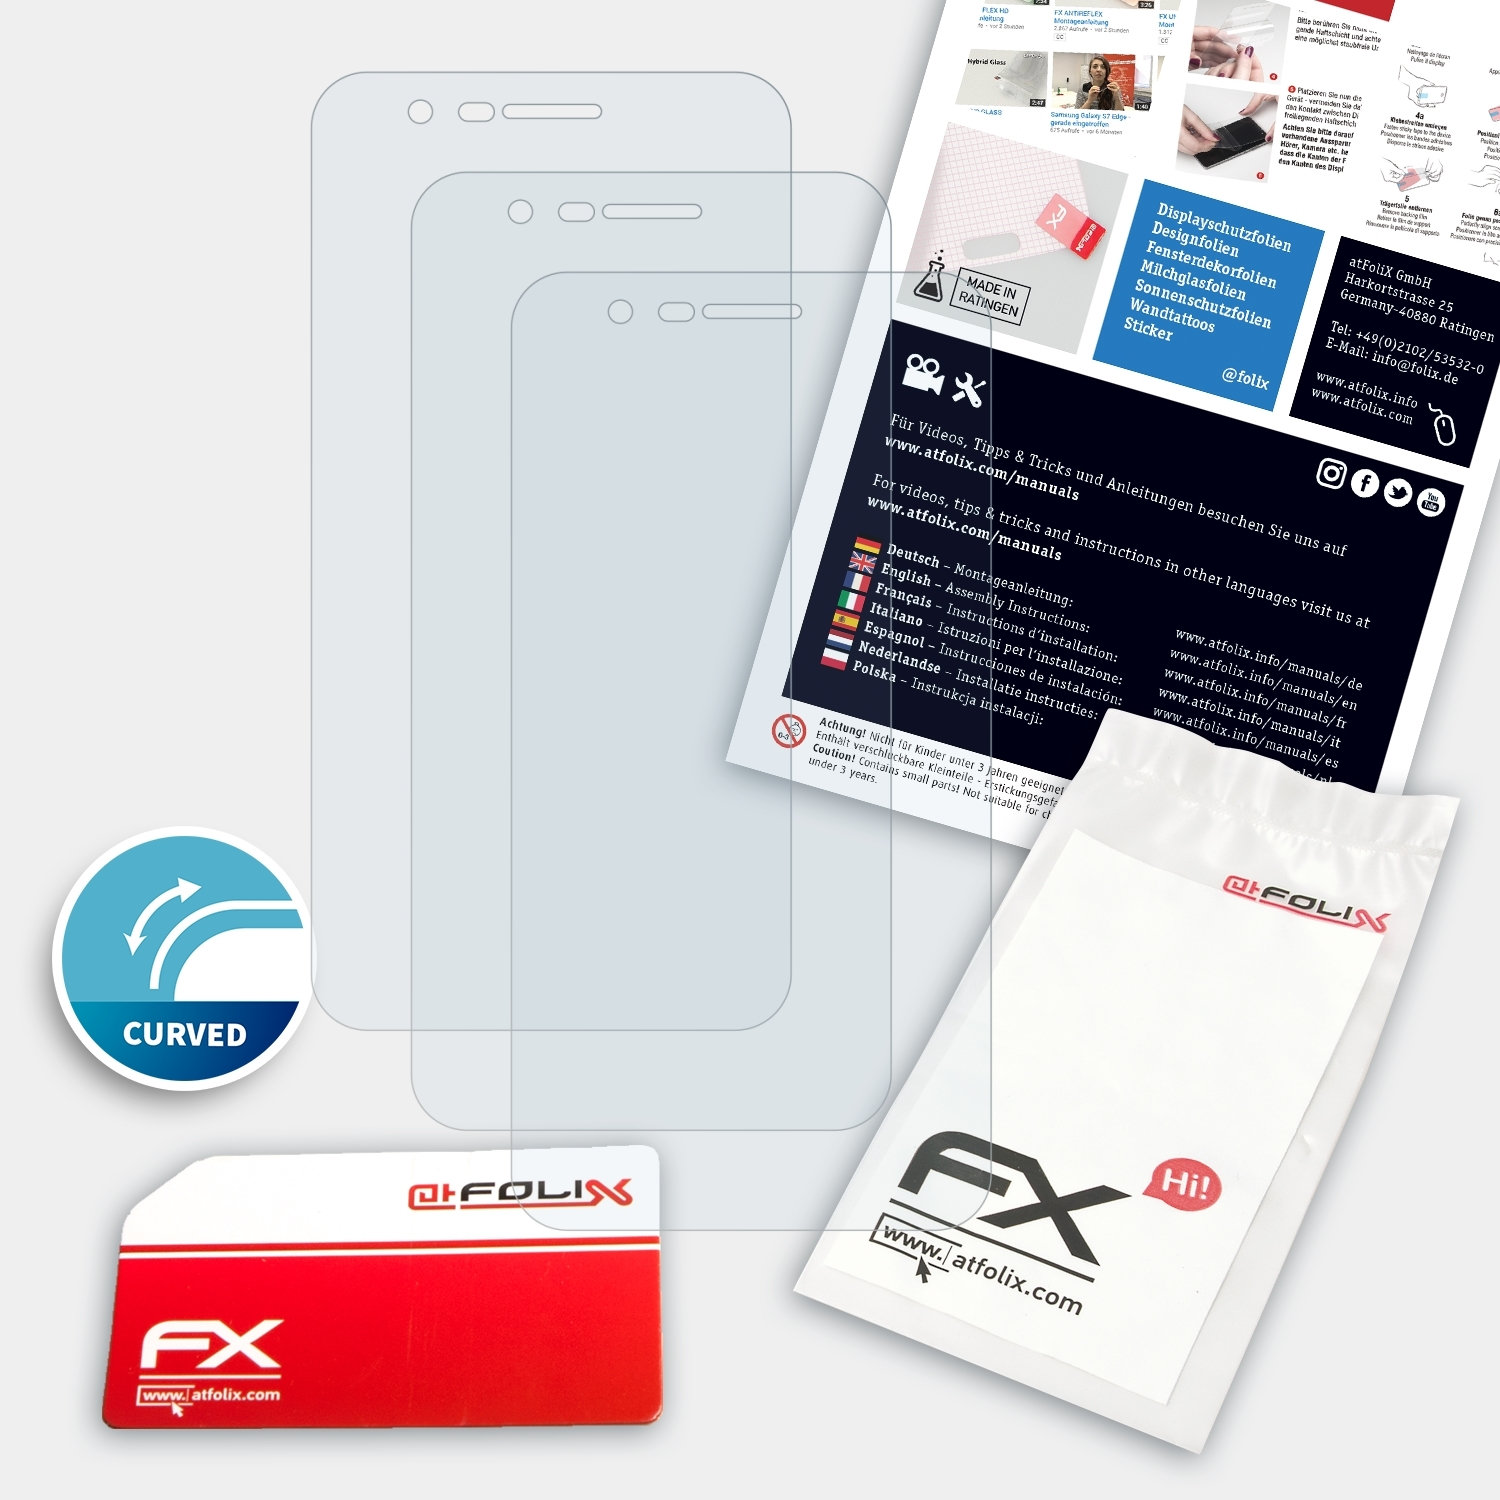 ATFOLIX 3x K11) FX-ActiFleX Displayschutz(für LG